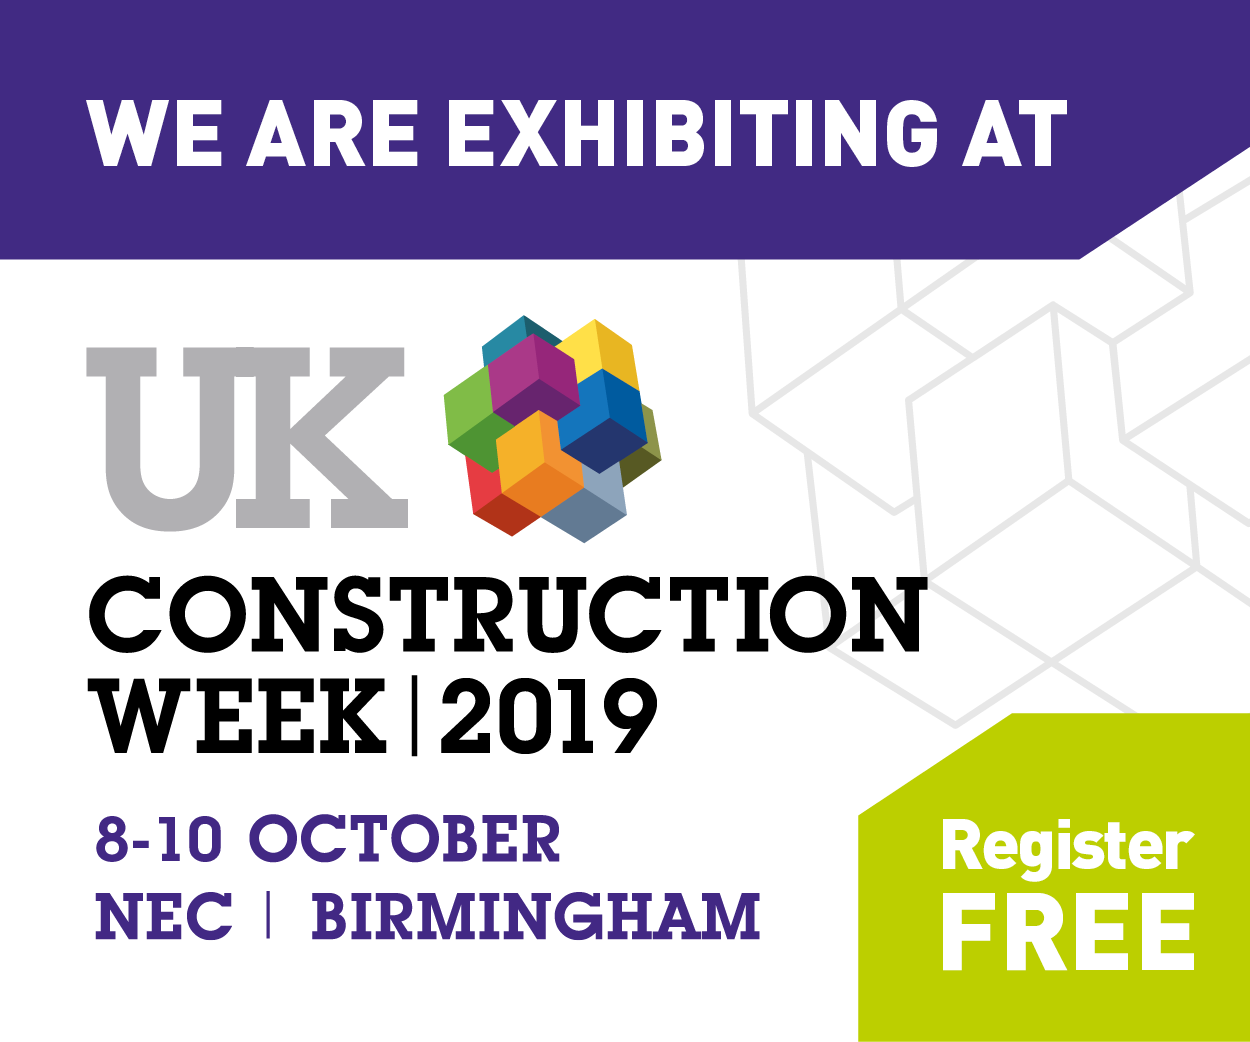 Visiting UK Construction Week at the NEC